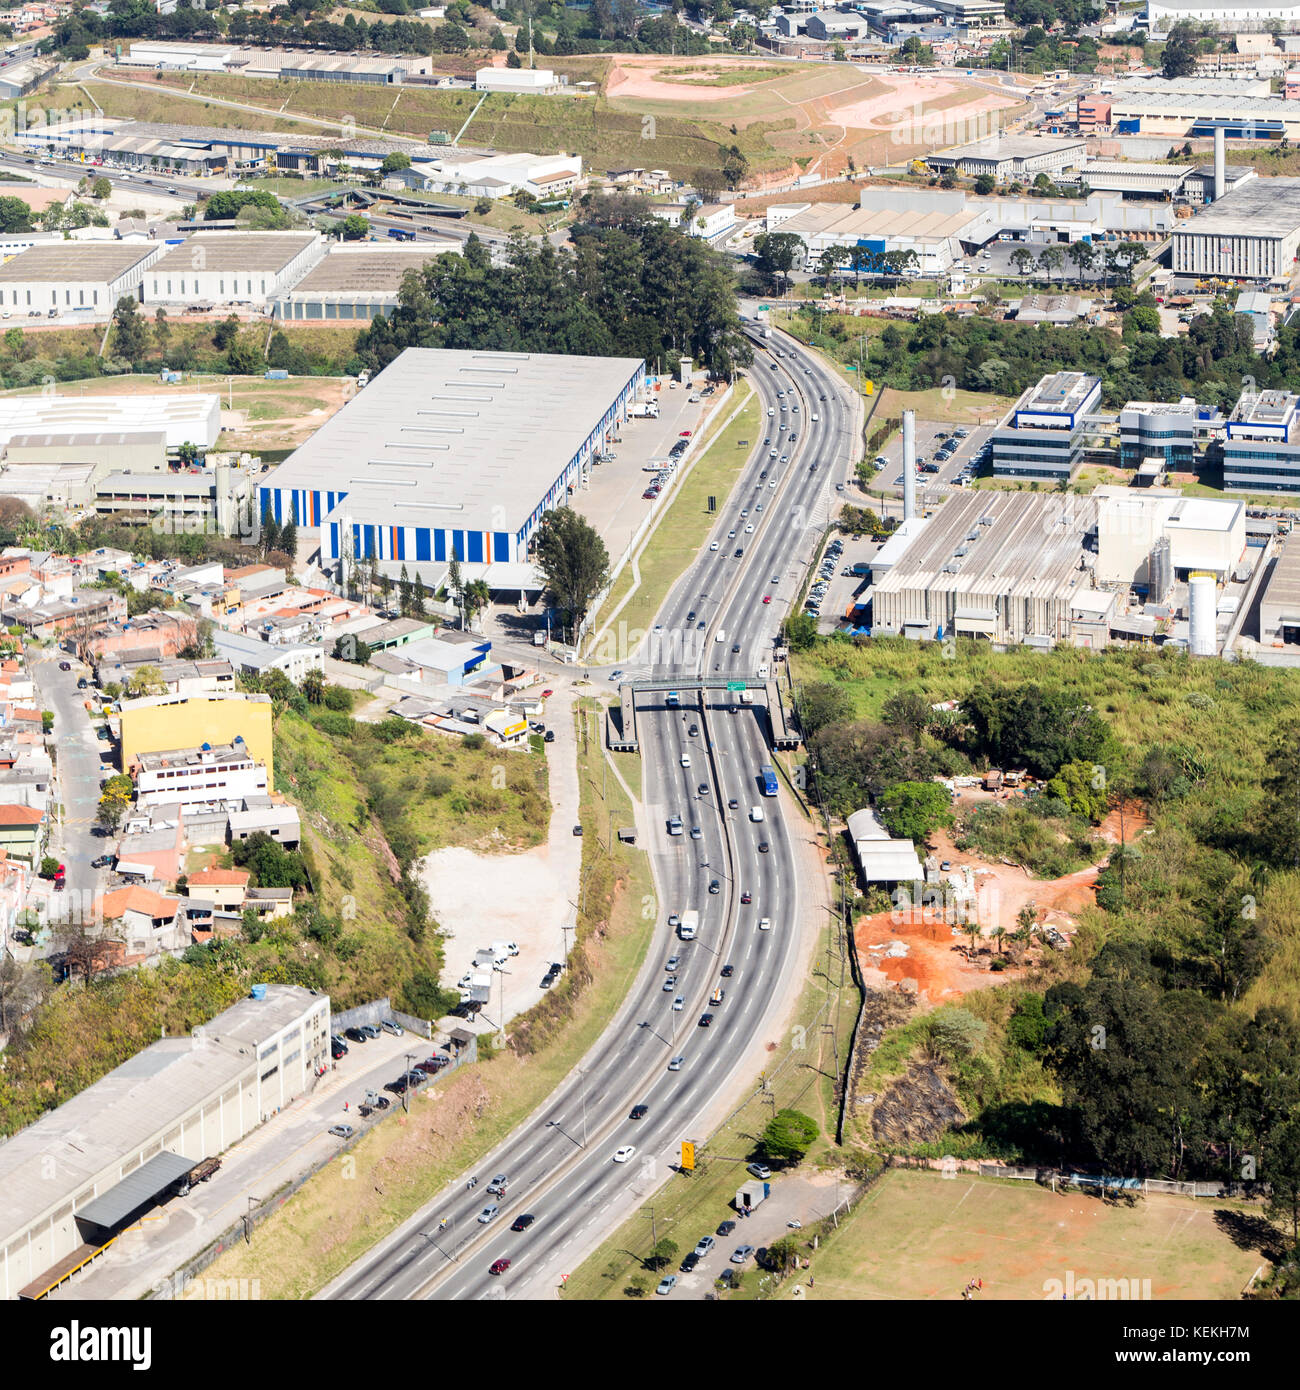 Vue aérienne de l'autoroute Raposo Tavares, région métropolitaine de sao paulo - brésil Banque D'Images